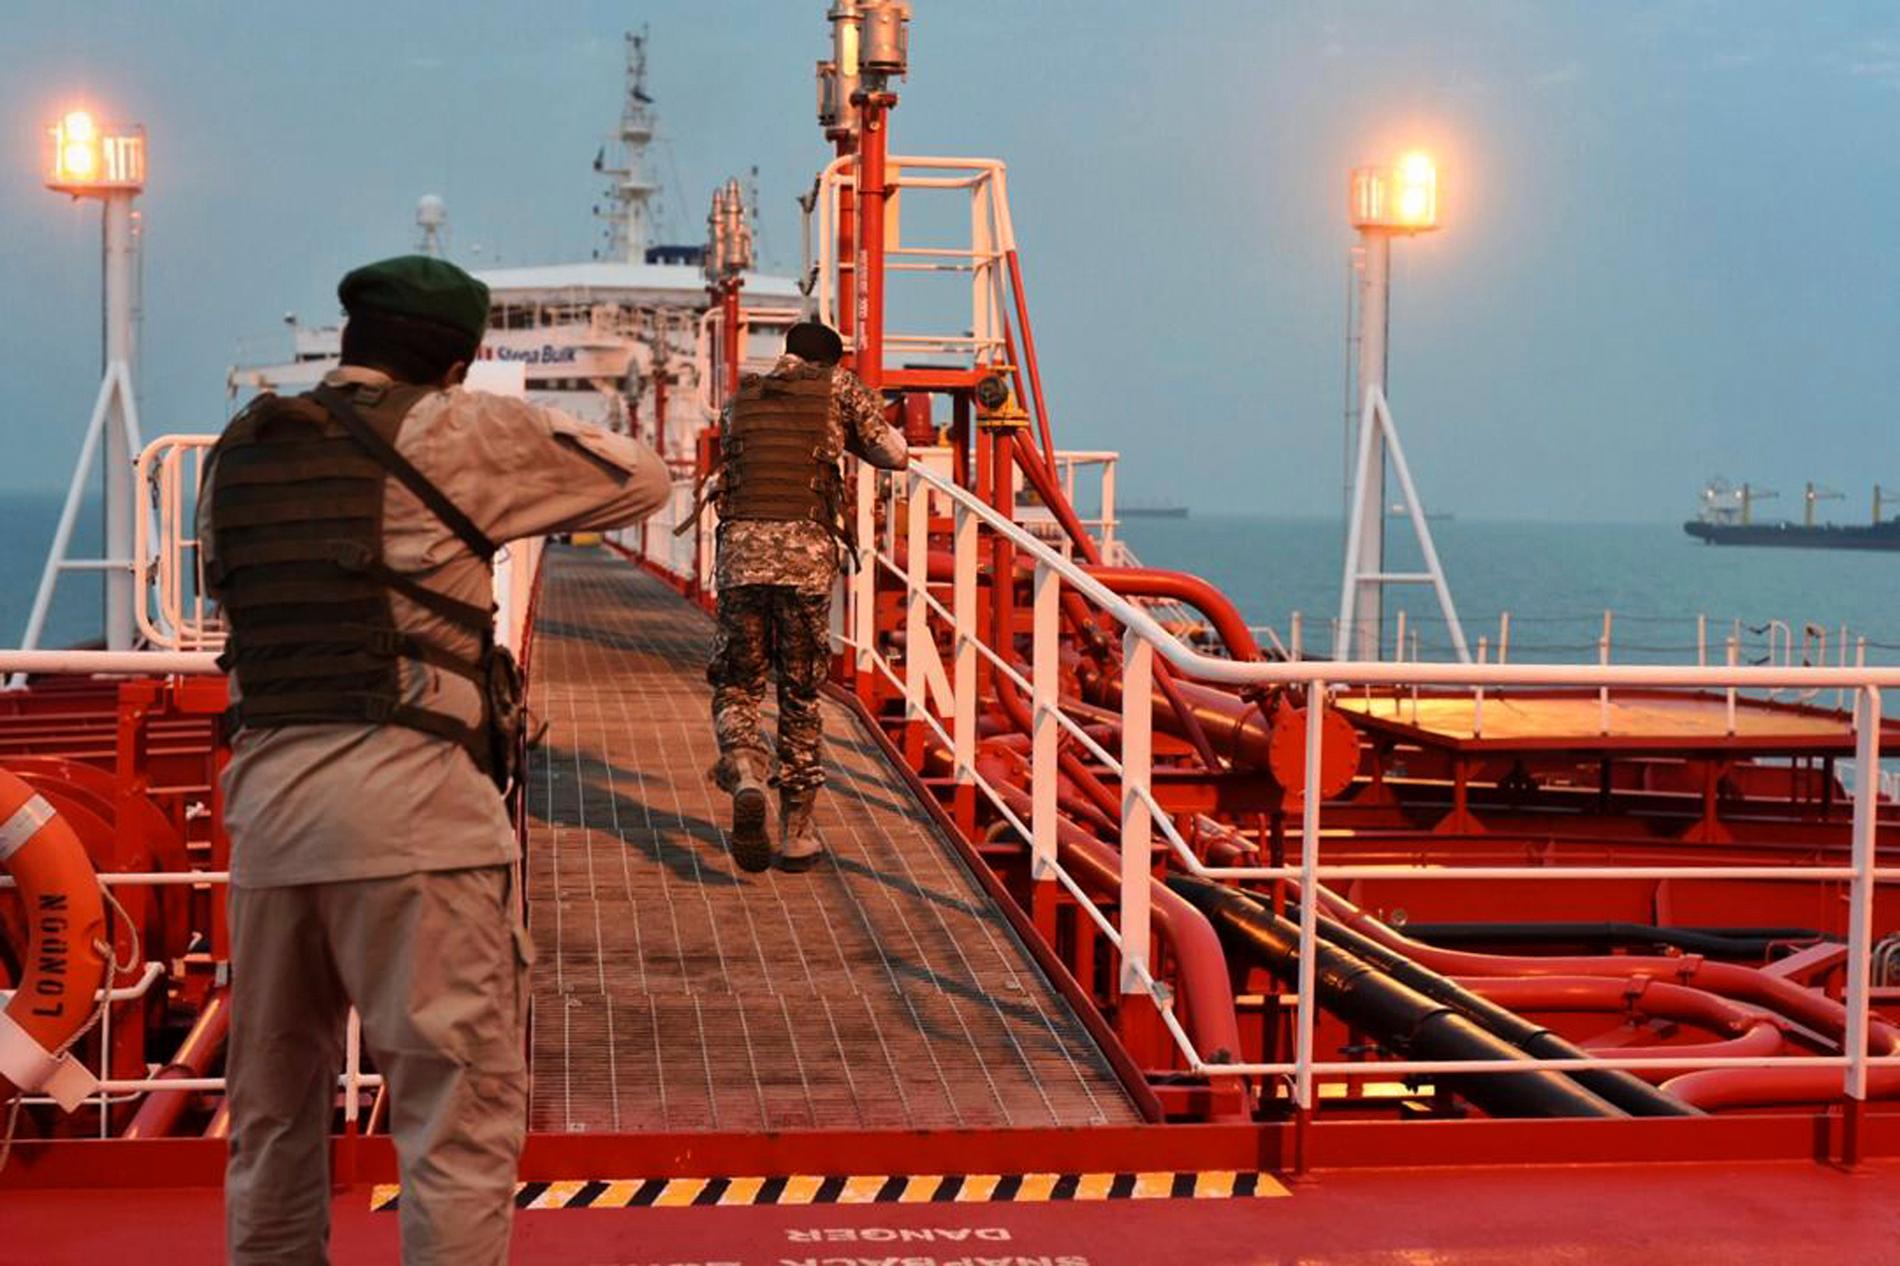 Soldater från iranska revolutionsgardet på väg ombord på det brittiskflaggade tankfartyget Stena Impero som ägs av svenska Stena Bulk. Fartyget beslagstogs i juli av Iran i Hormuzsundet.